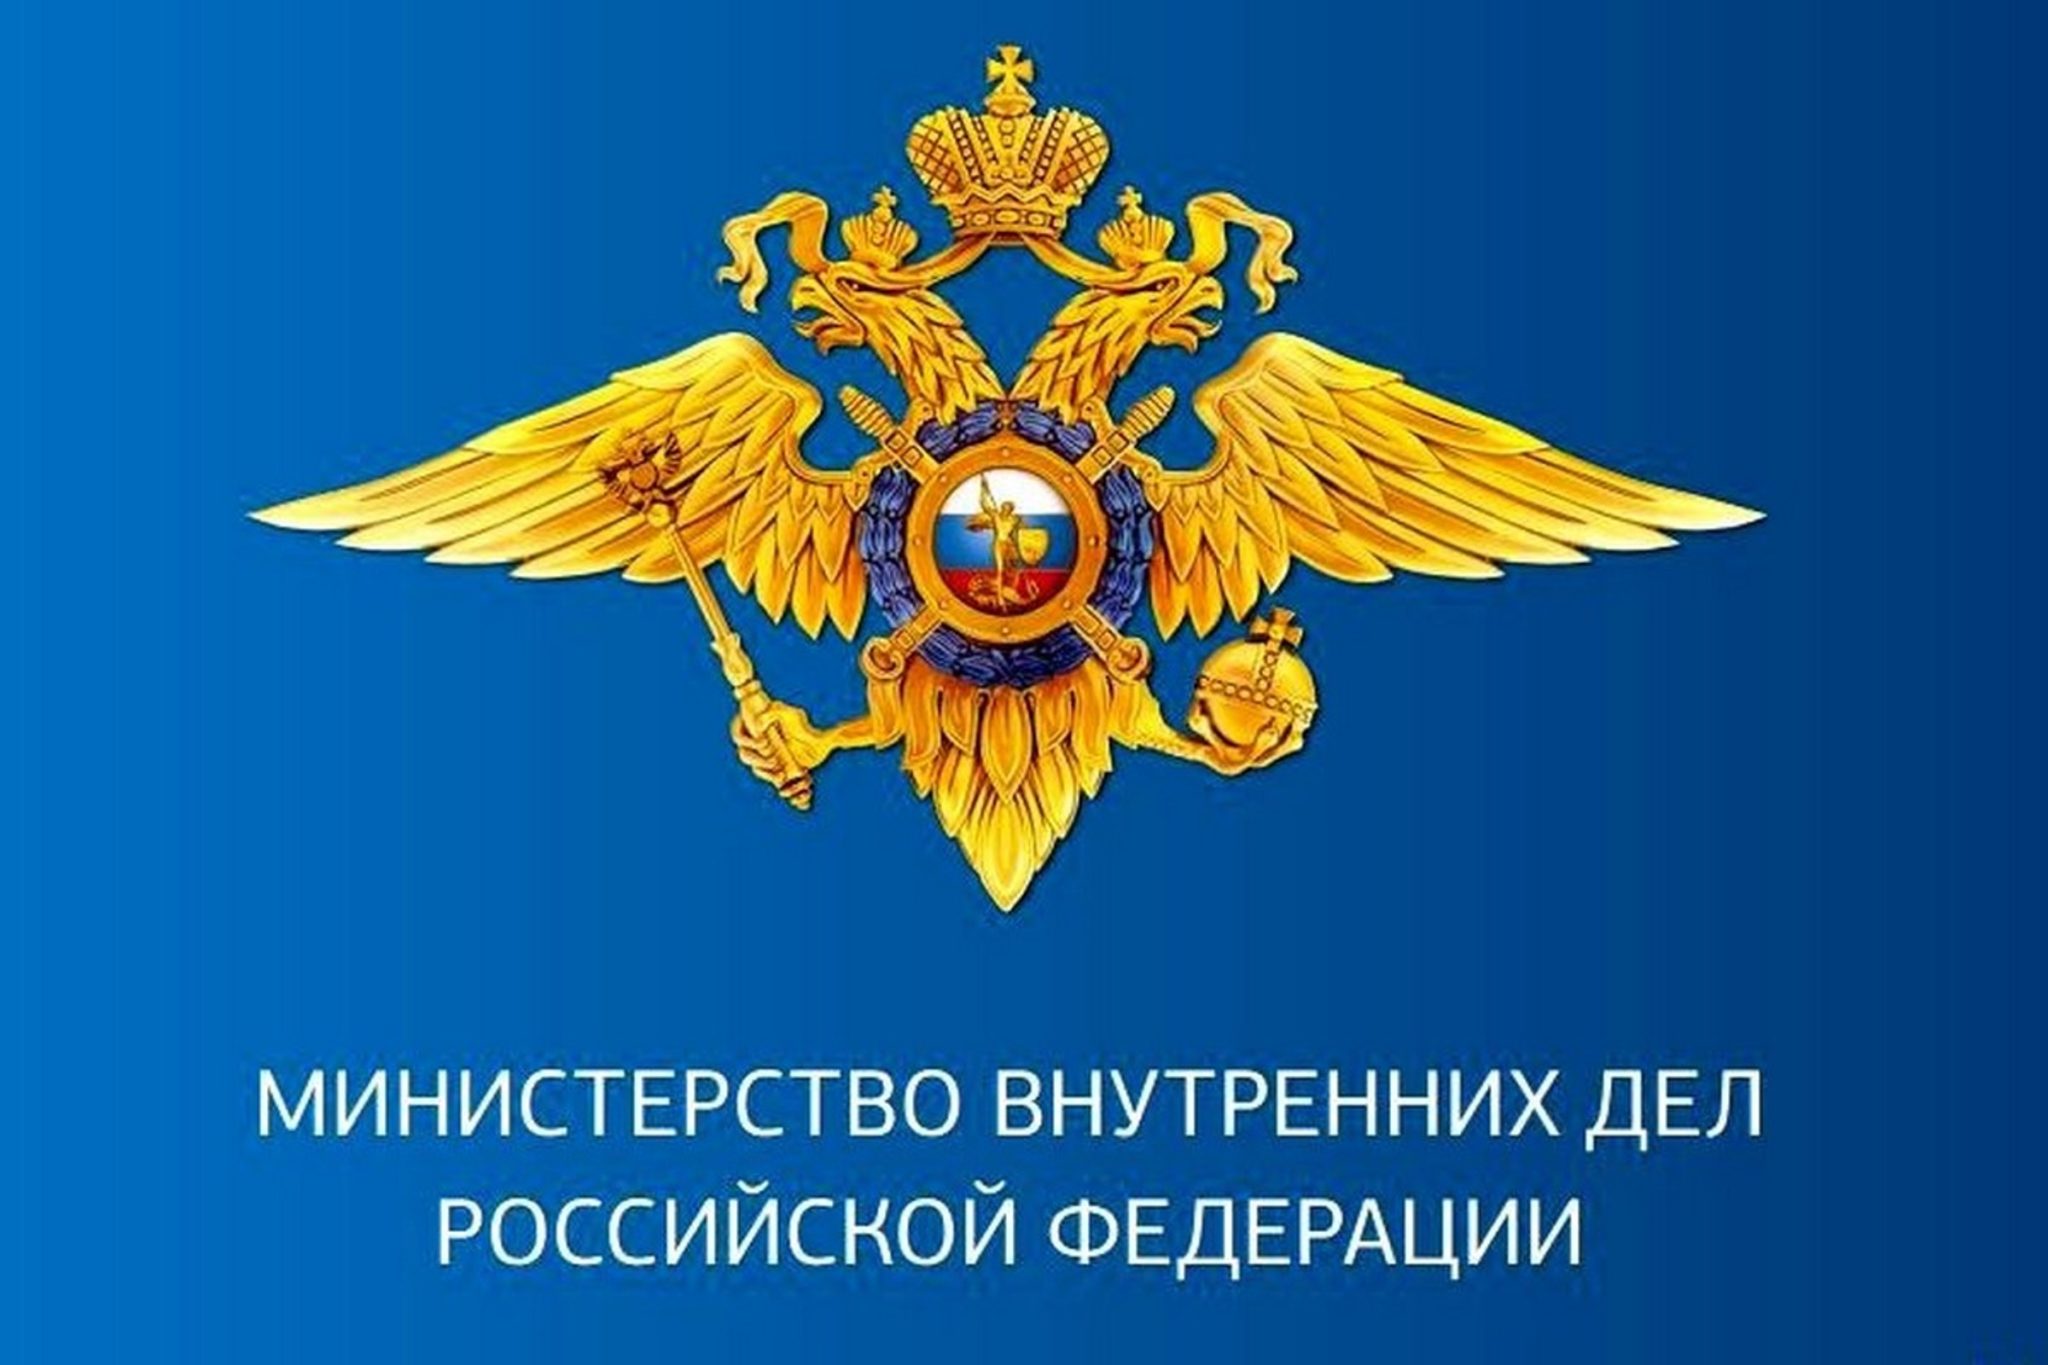 МВД России предупреждает: телефонные мошенники хотят сделать своих жертв диверсантами и террористами.